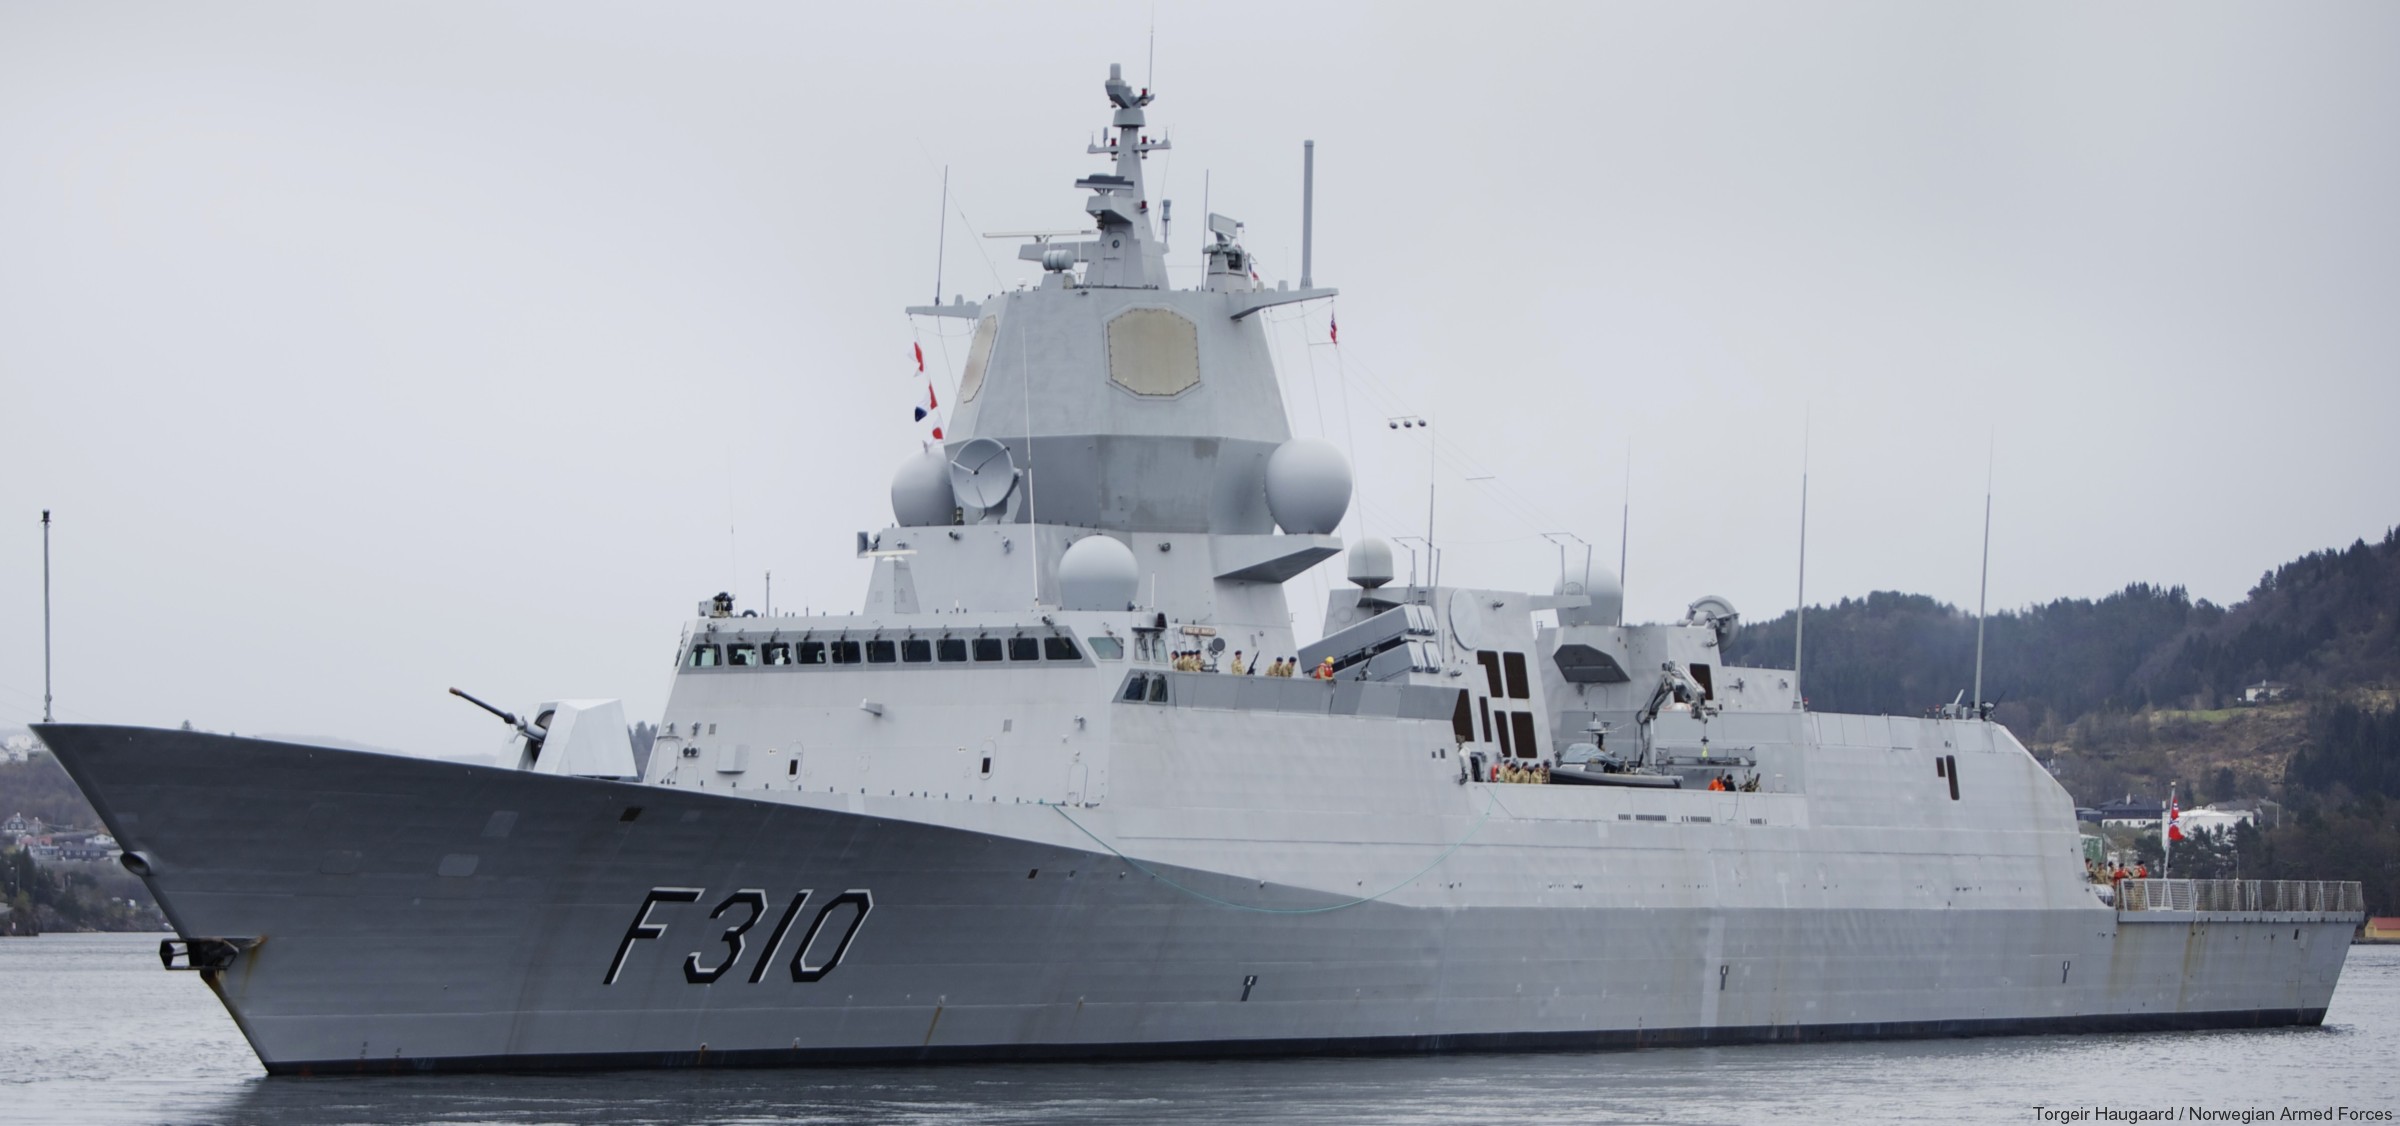 f-310 fridtjof nansen hnoms knm frigate royal norwegian navy sjoforsvaret 23